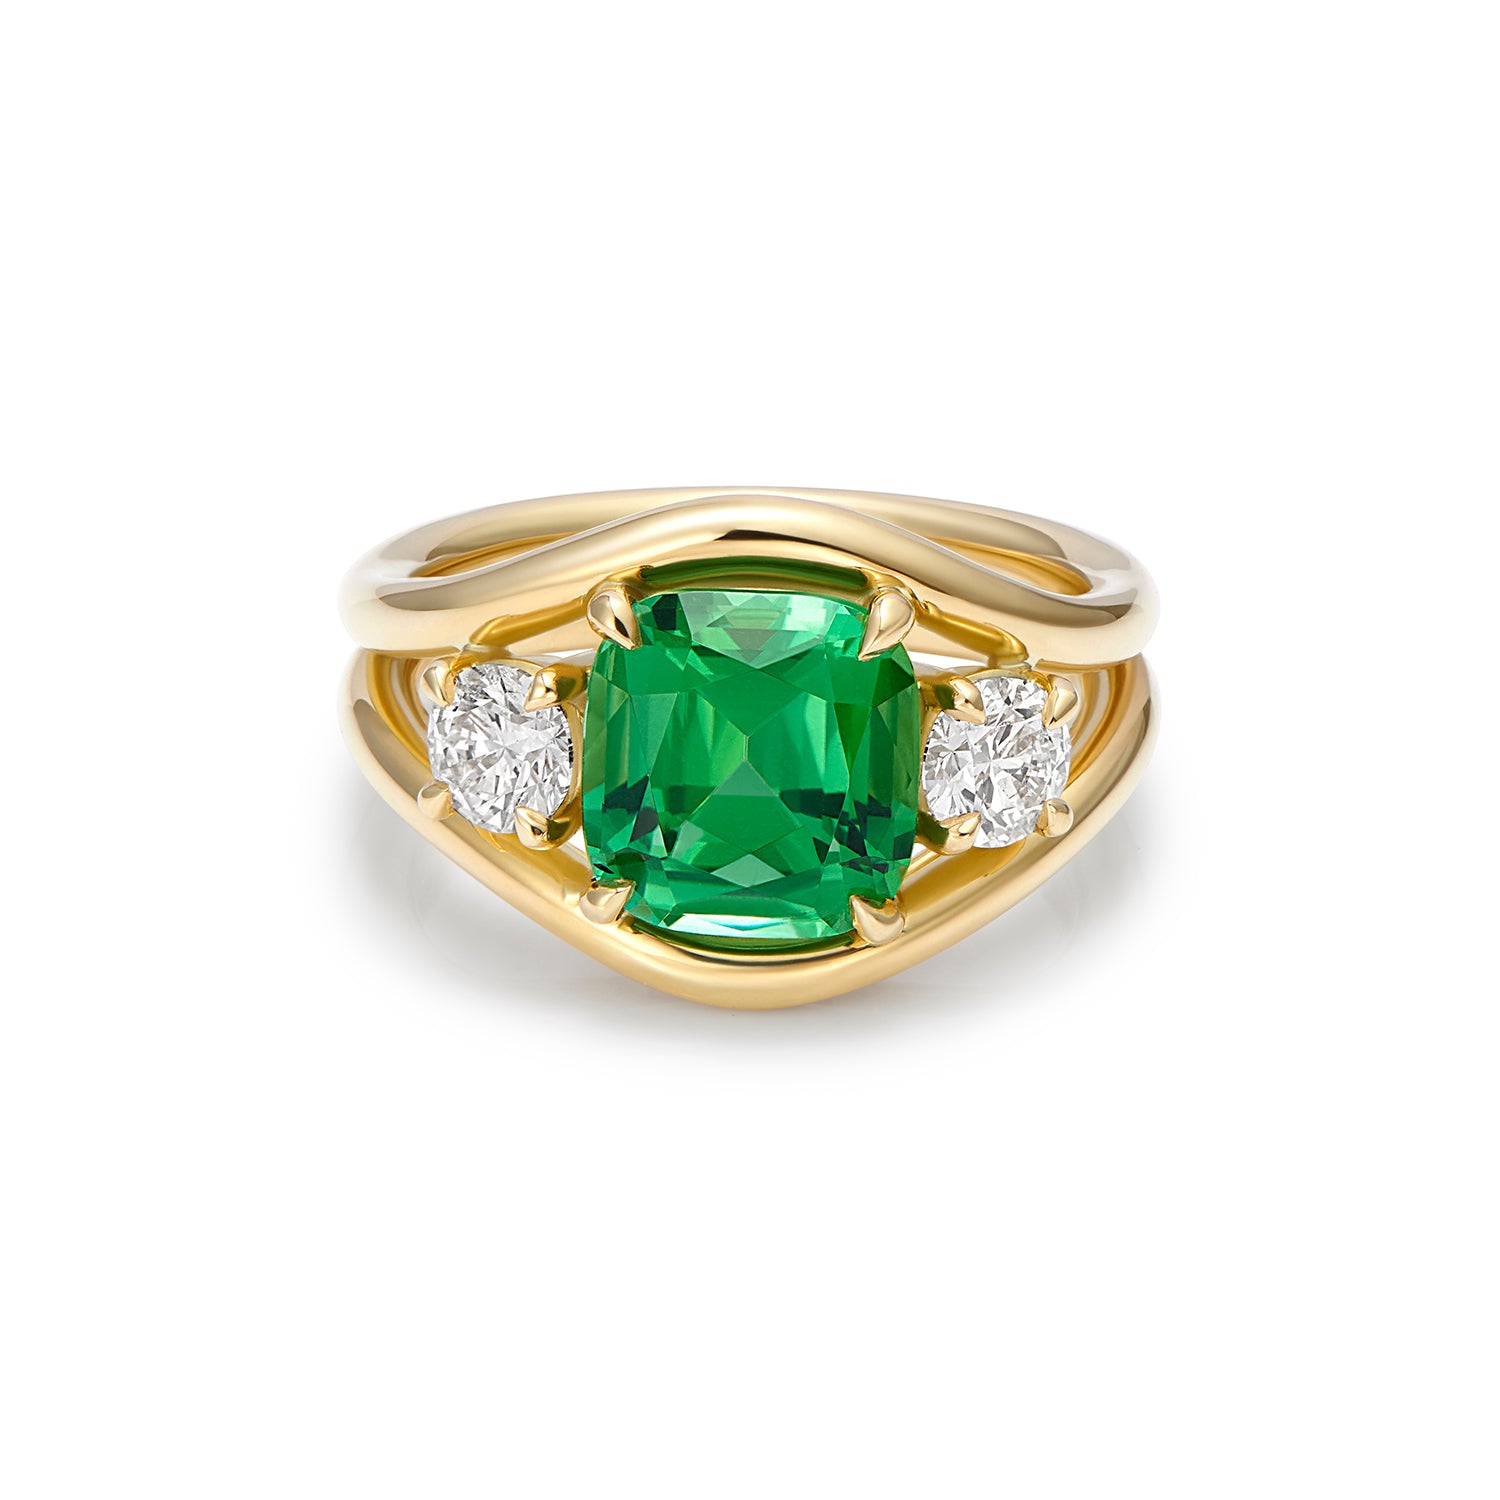 Bespoke Jewellery | Gemstone Jewellery | Minka Jewels